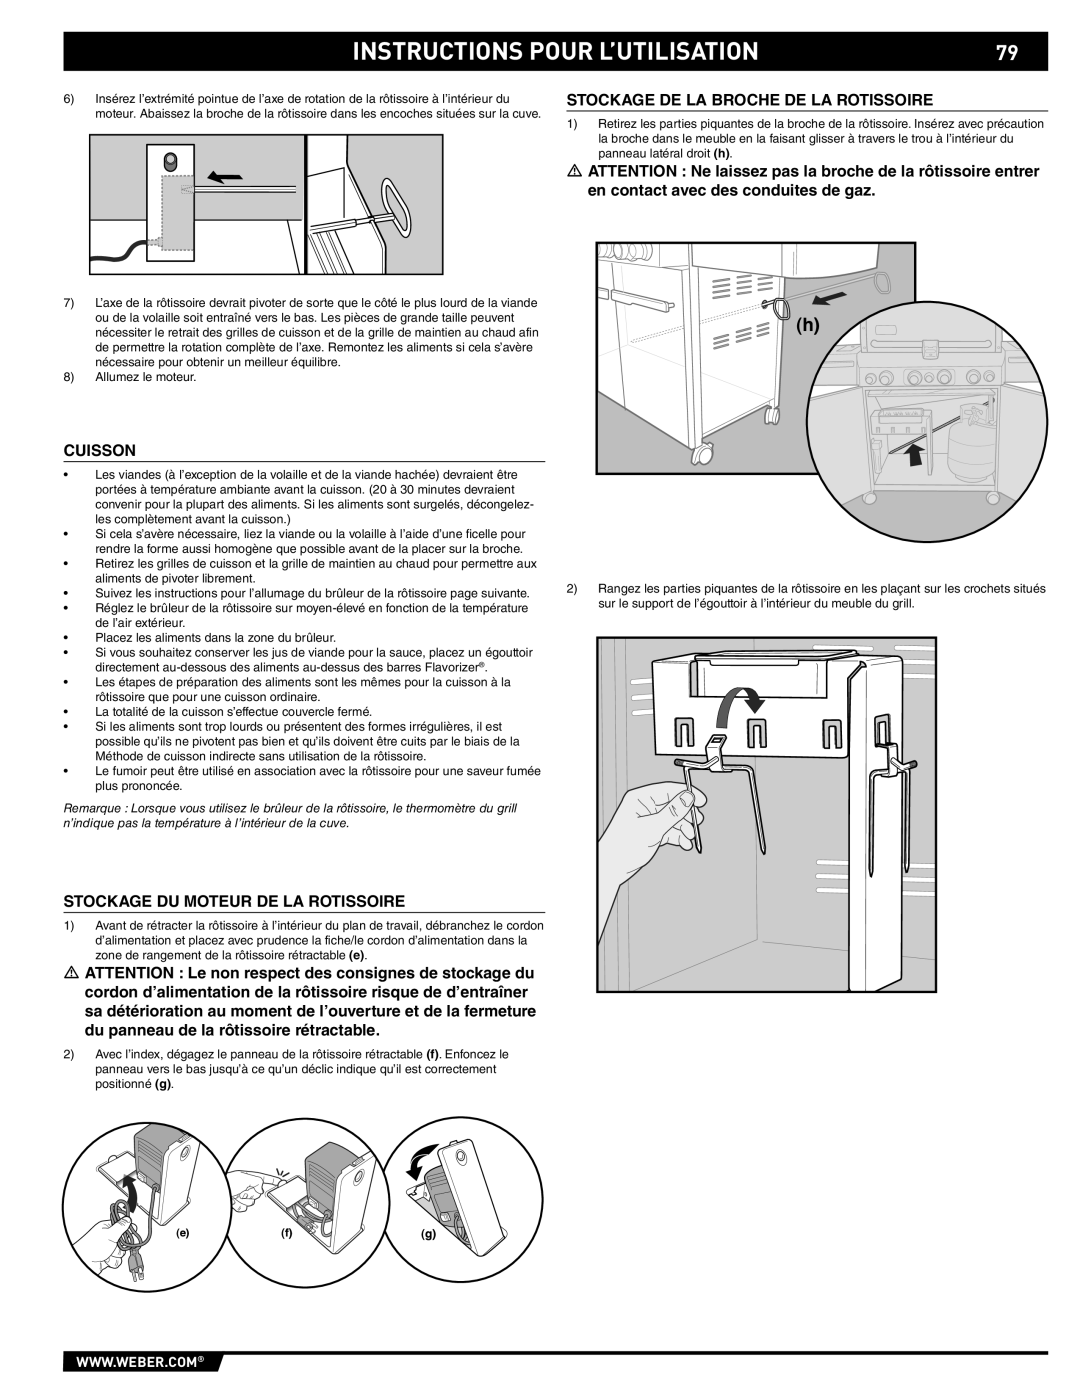 Summit 89190 manual Instructions Pour L’Utilisation, Stockage De La Broche De La Rotissoire, Cuisson 